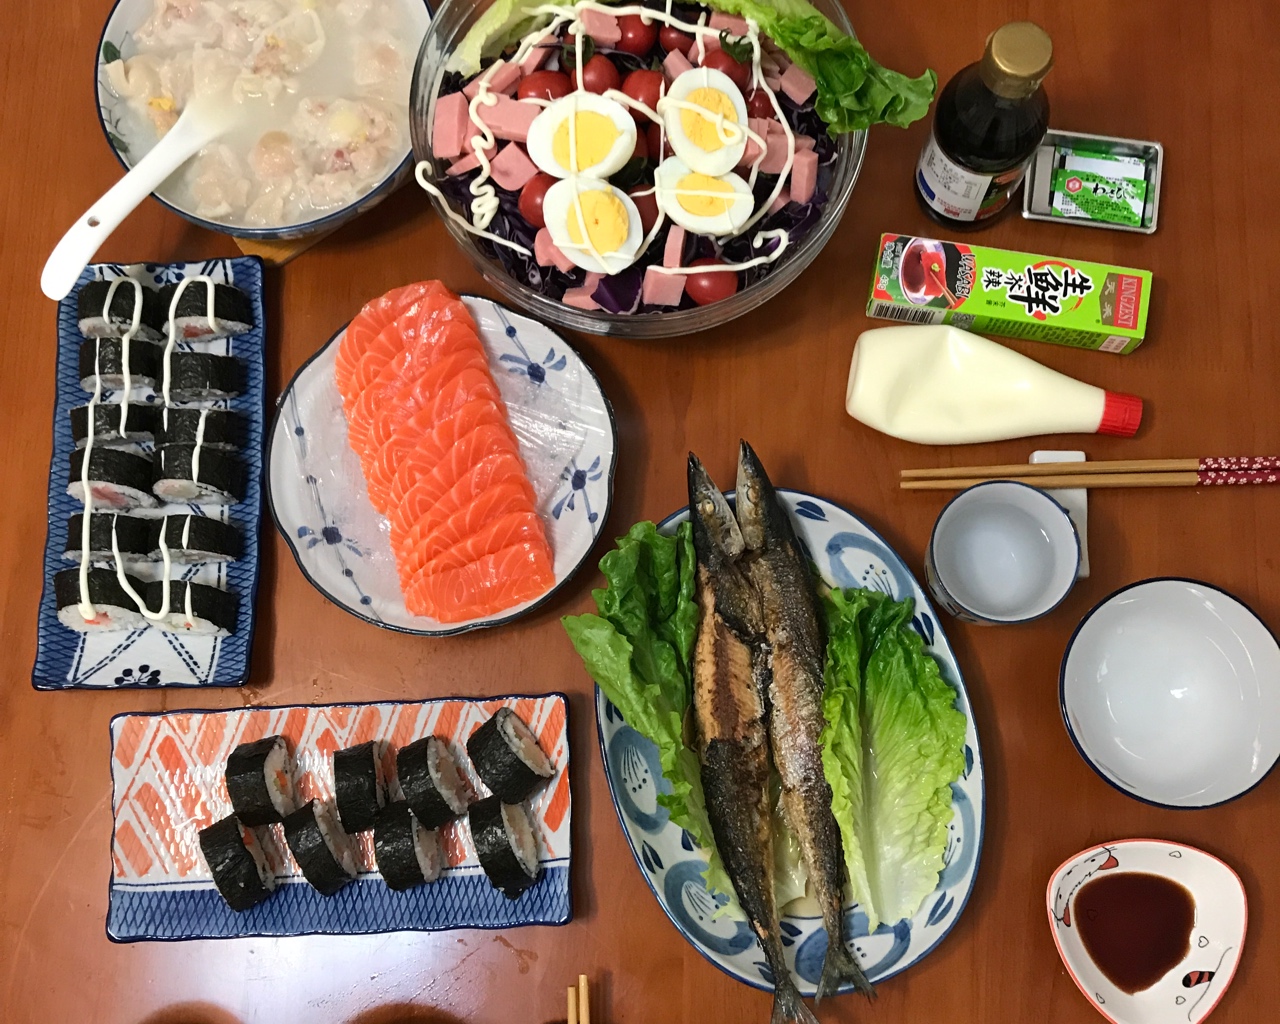 日式料理晚餐食谱